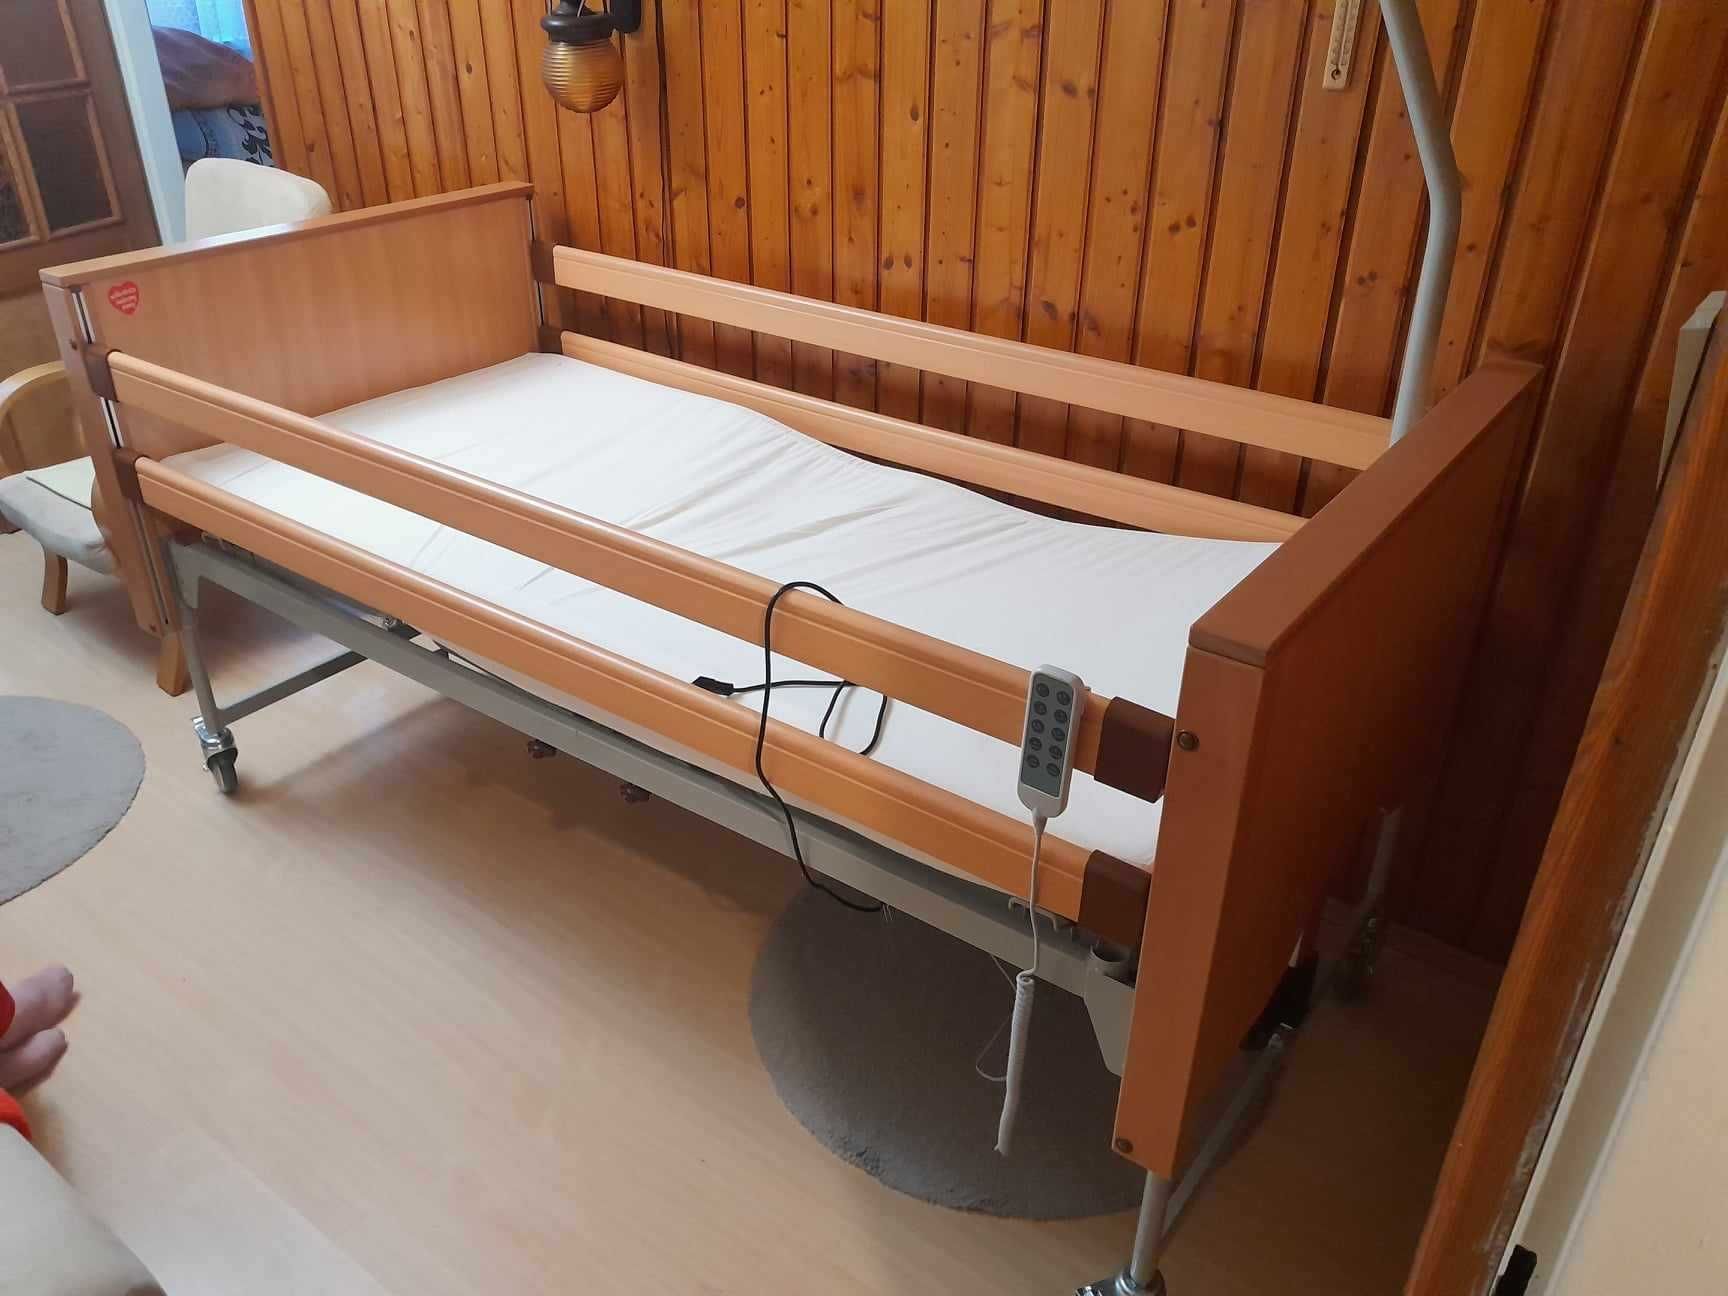 łóżko szpitalne elektryczne